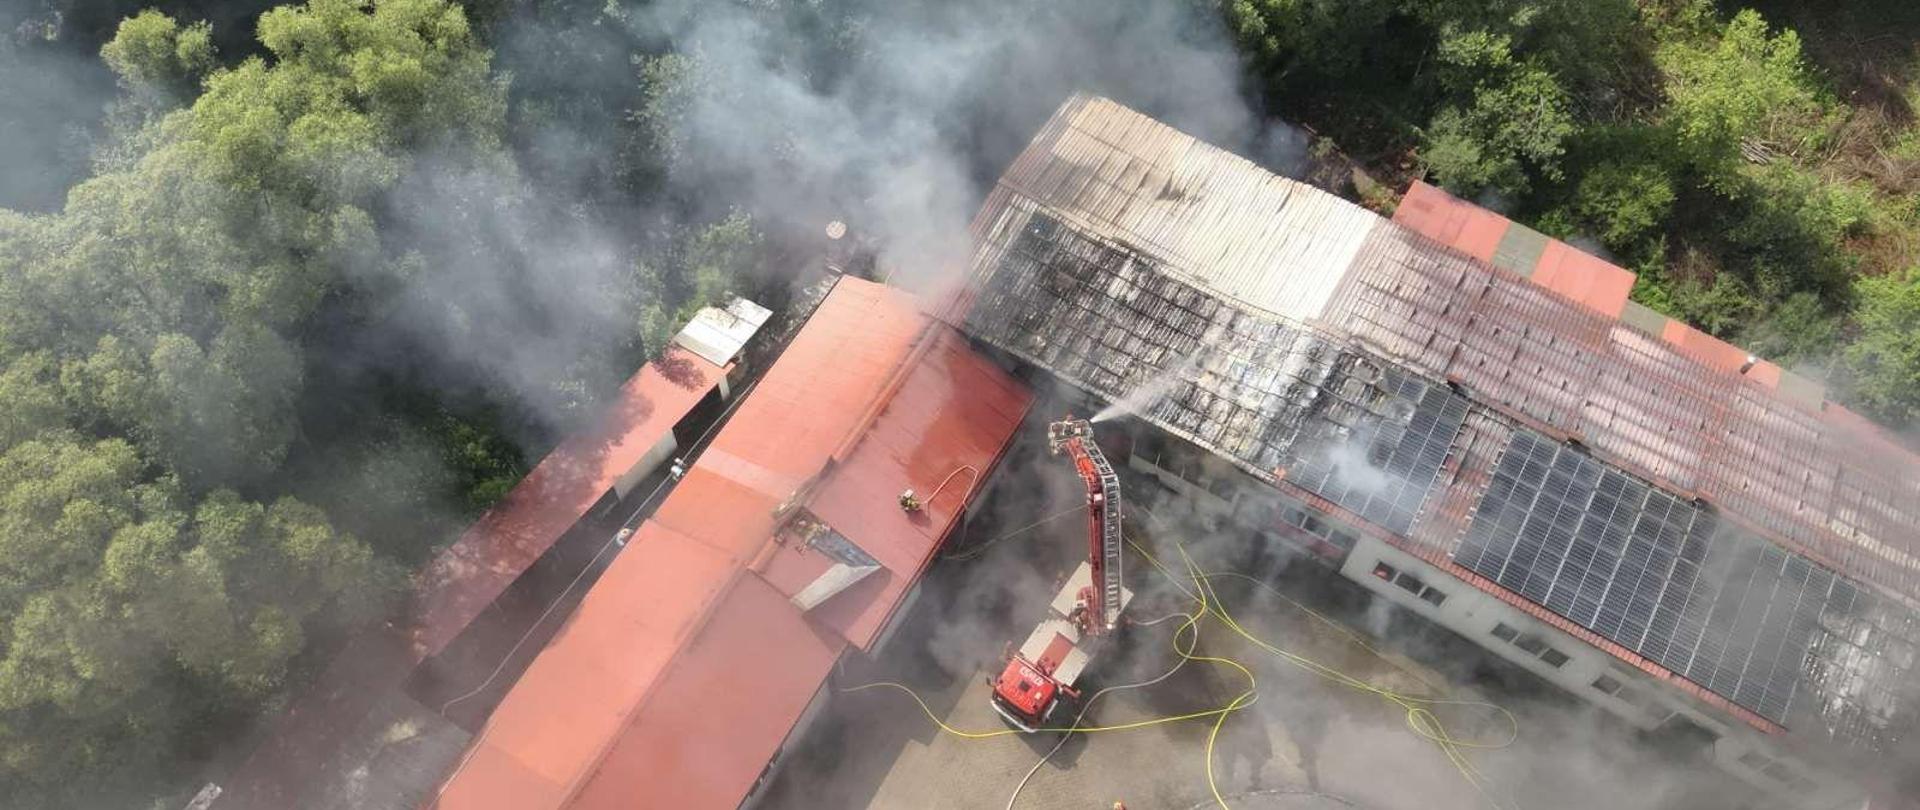 Pożar w budynku produkcyjnym w Pcimiu